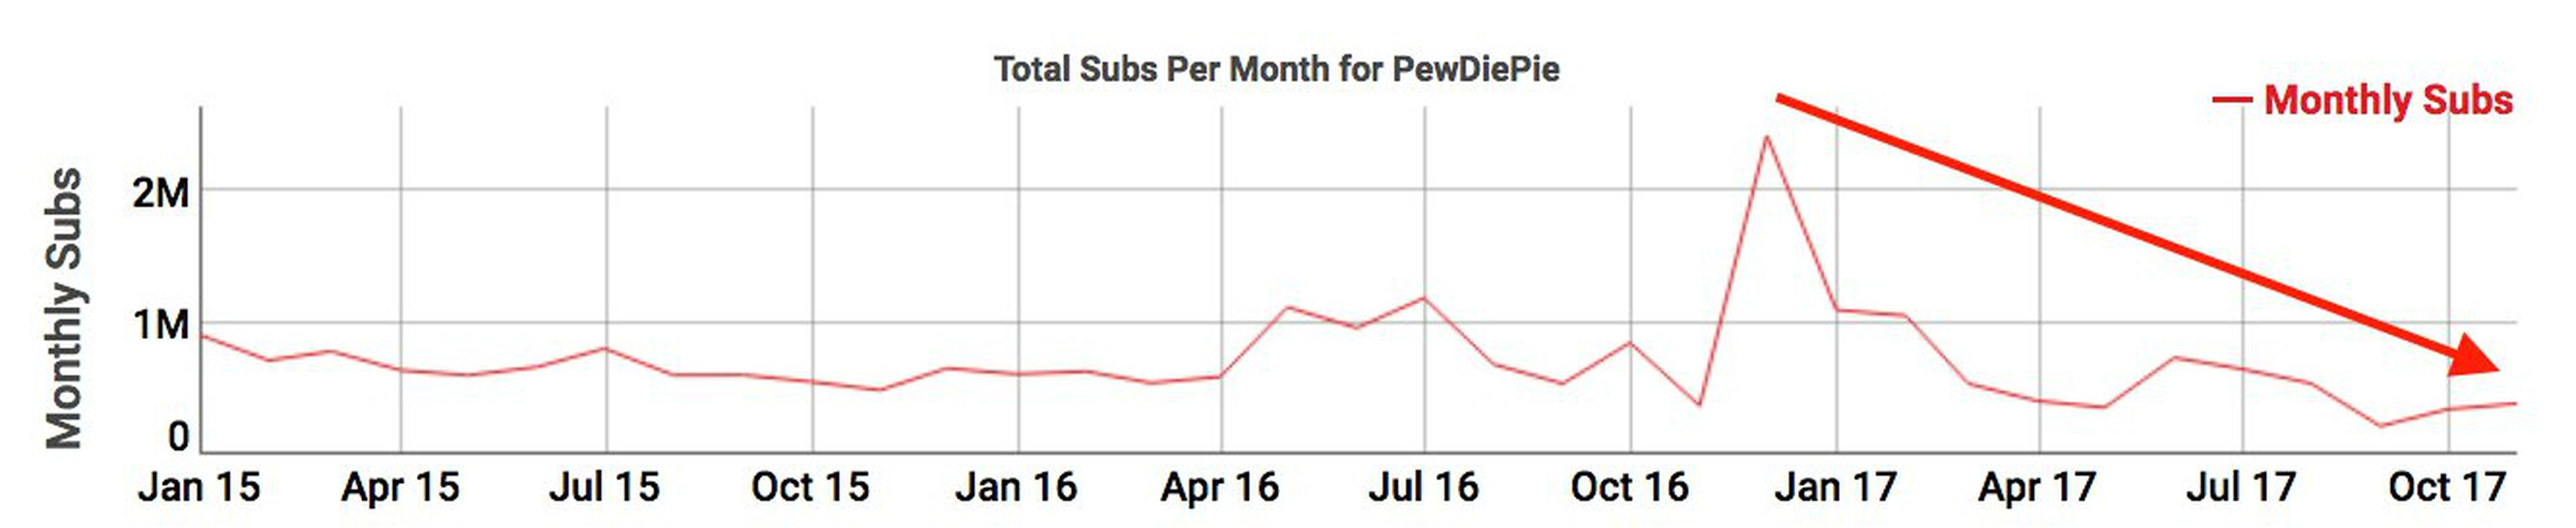 El gráfico sugiere que PewDiePie alcanzó su cénit en YouTube a finales de 2016.